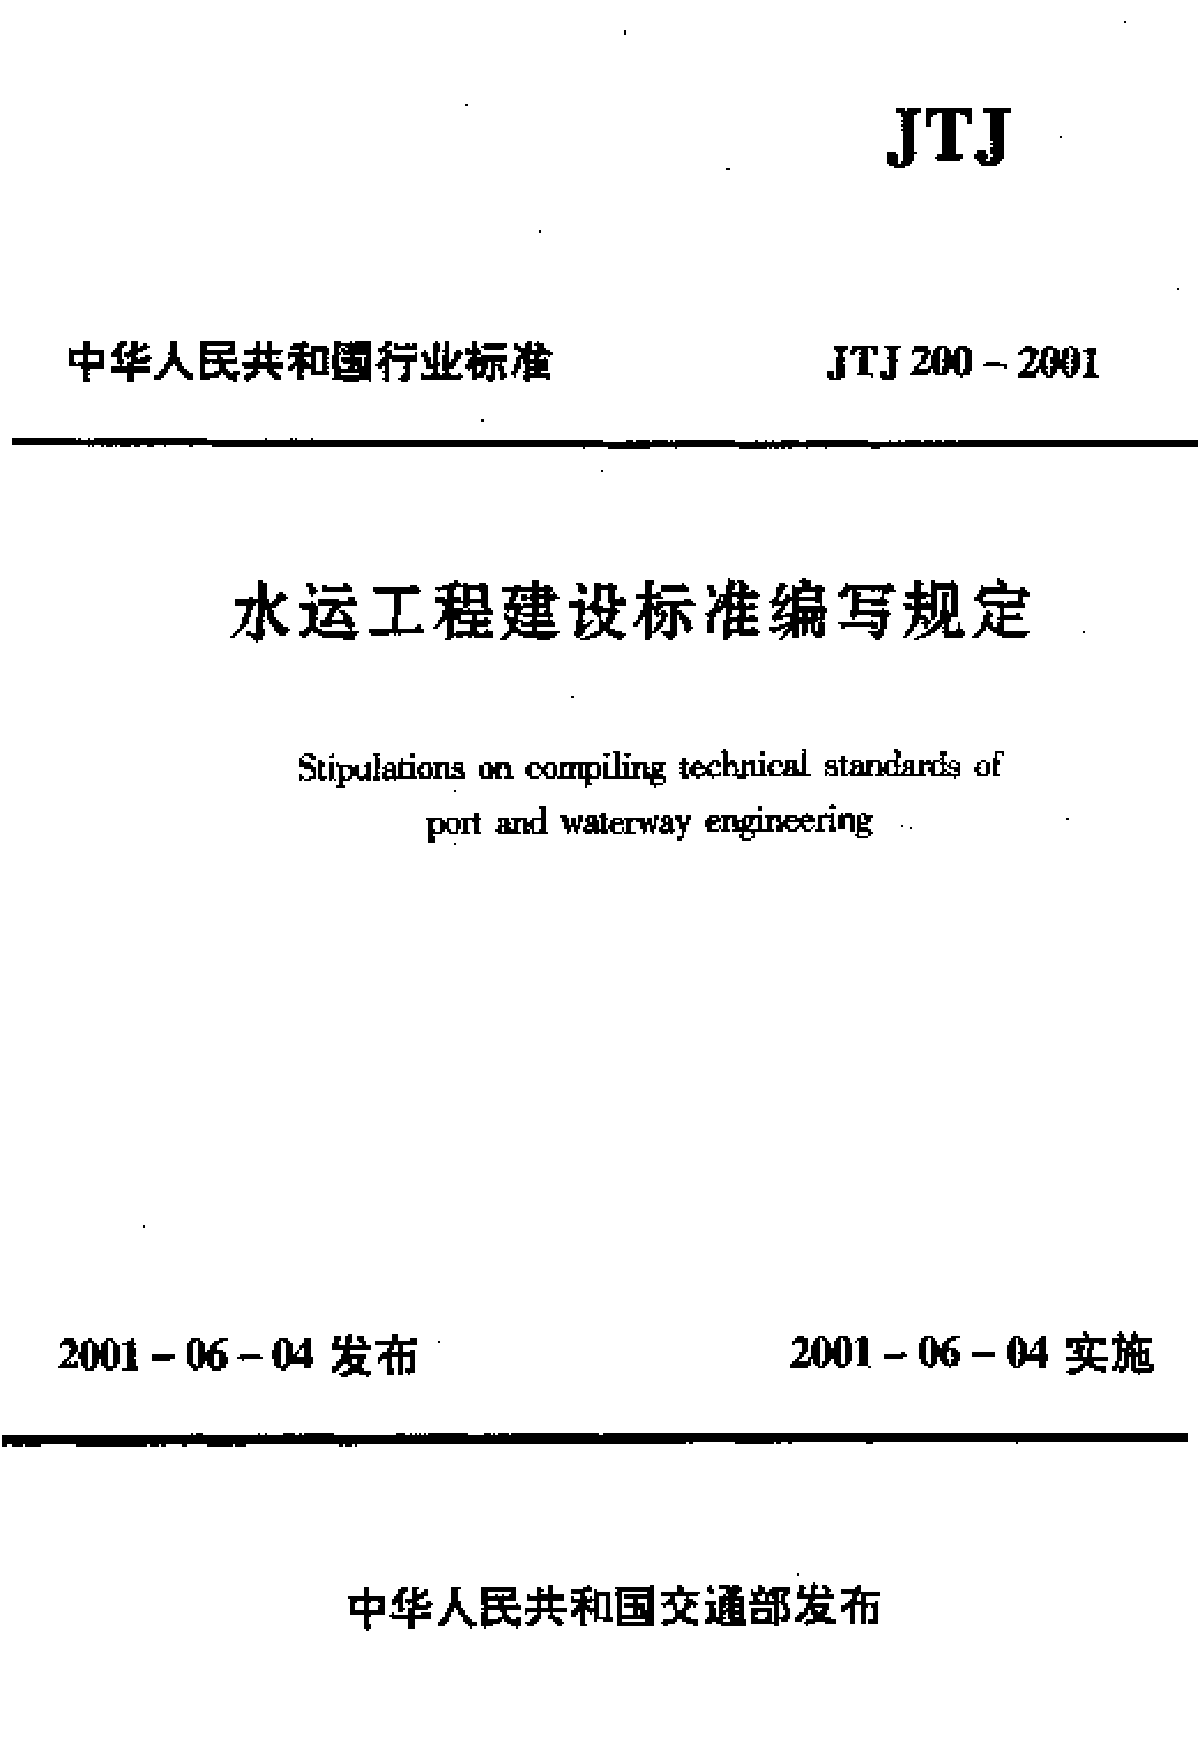 JTJ200-2001水运工程建设标准编写规定